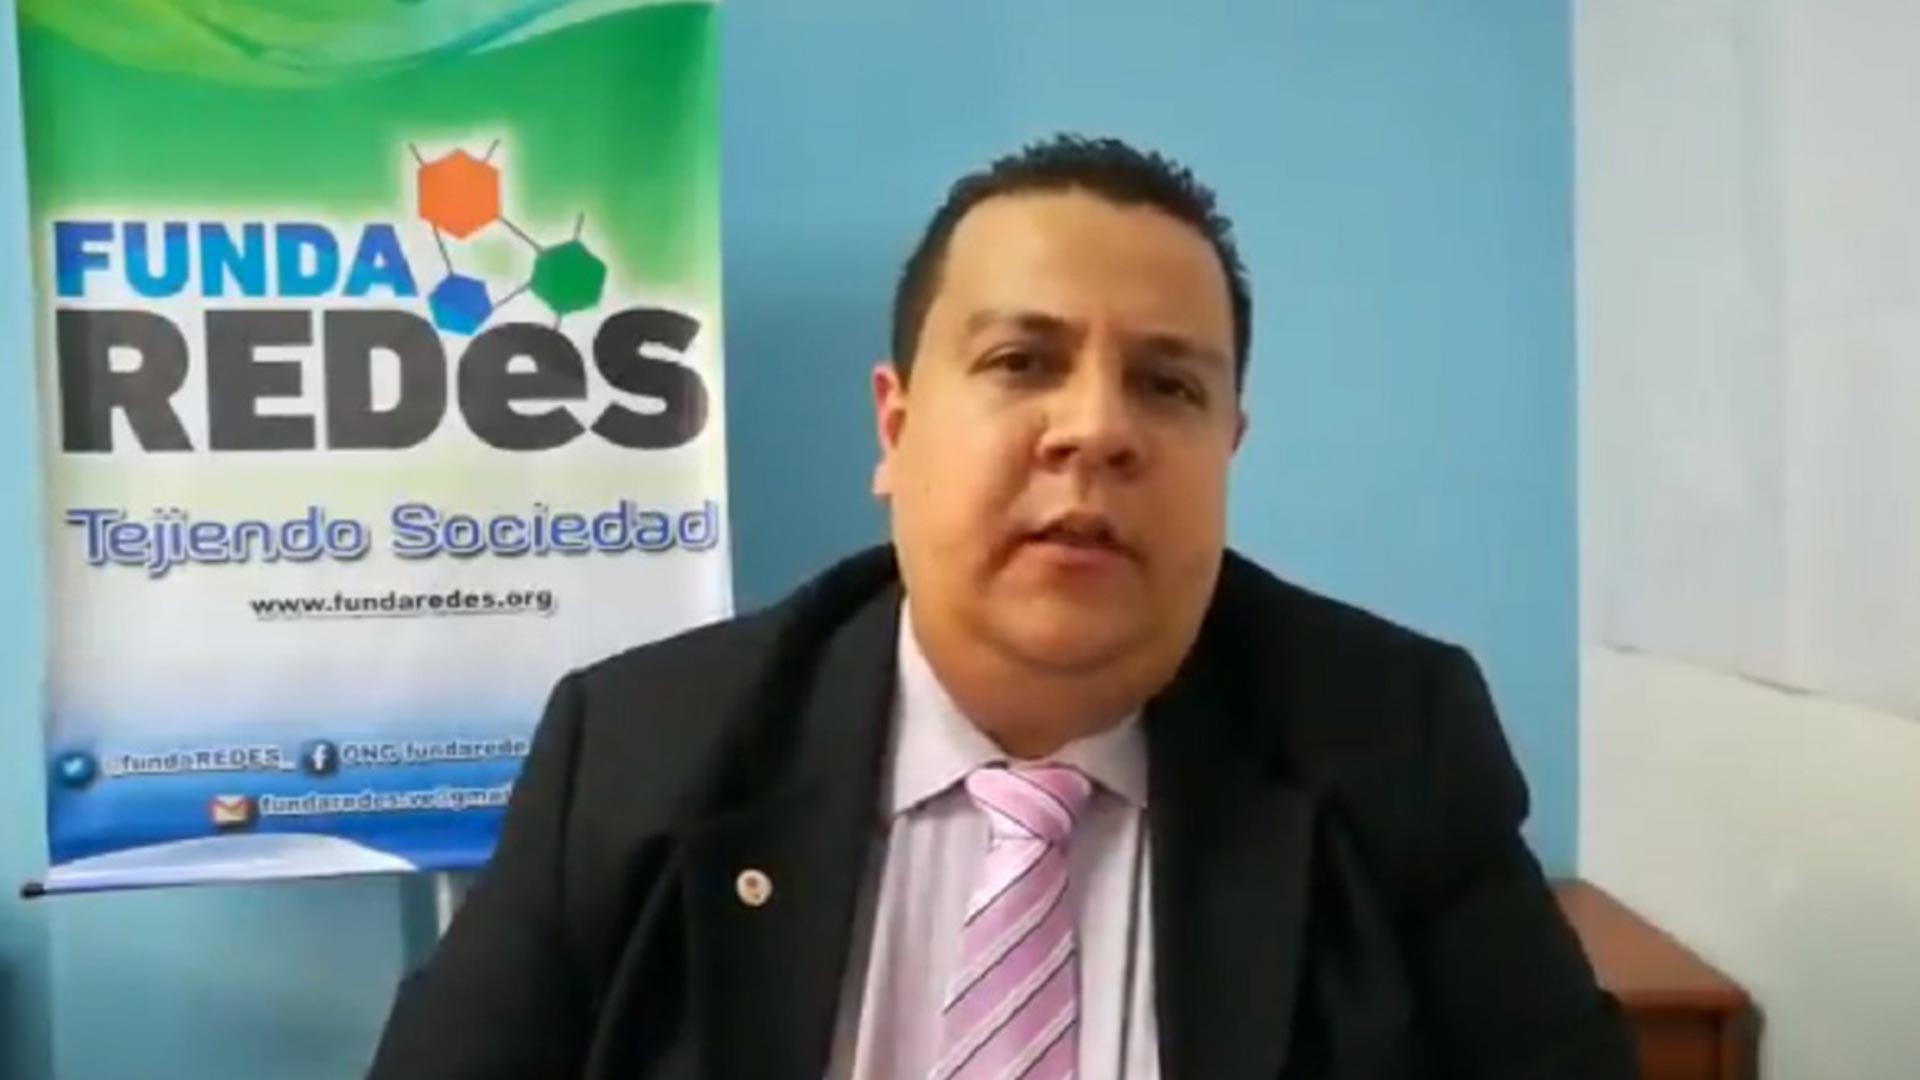 Fundaredes exigió la liberación de su director tras cinco meses arrestado  por el régimen de Nicolás Maduro - Infobae